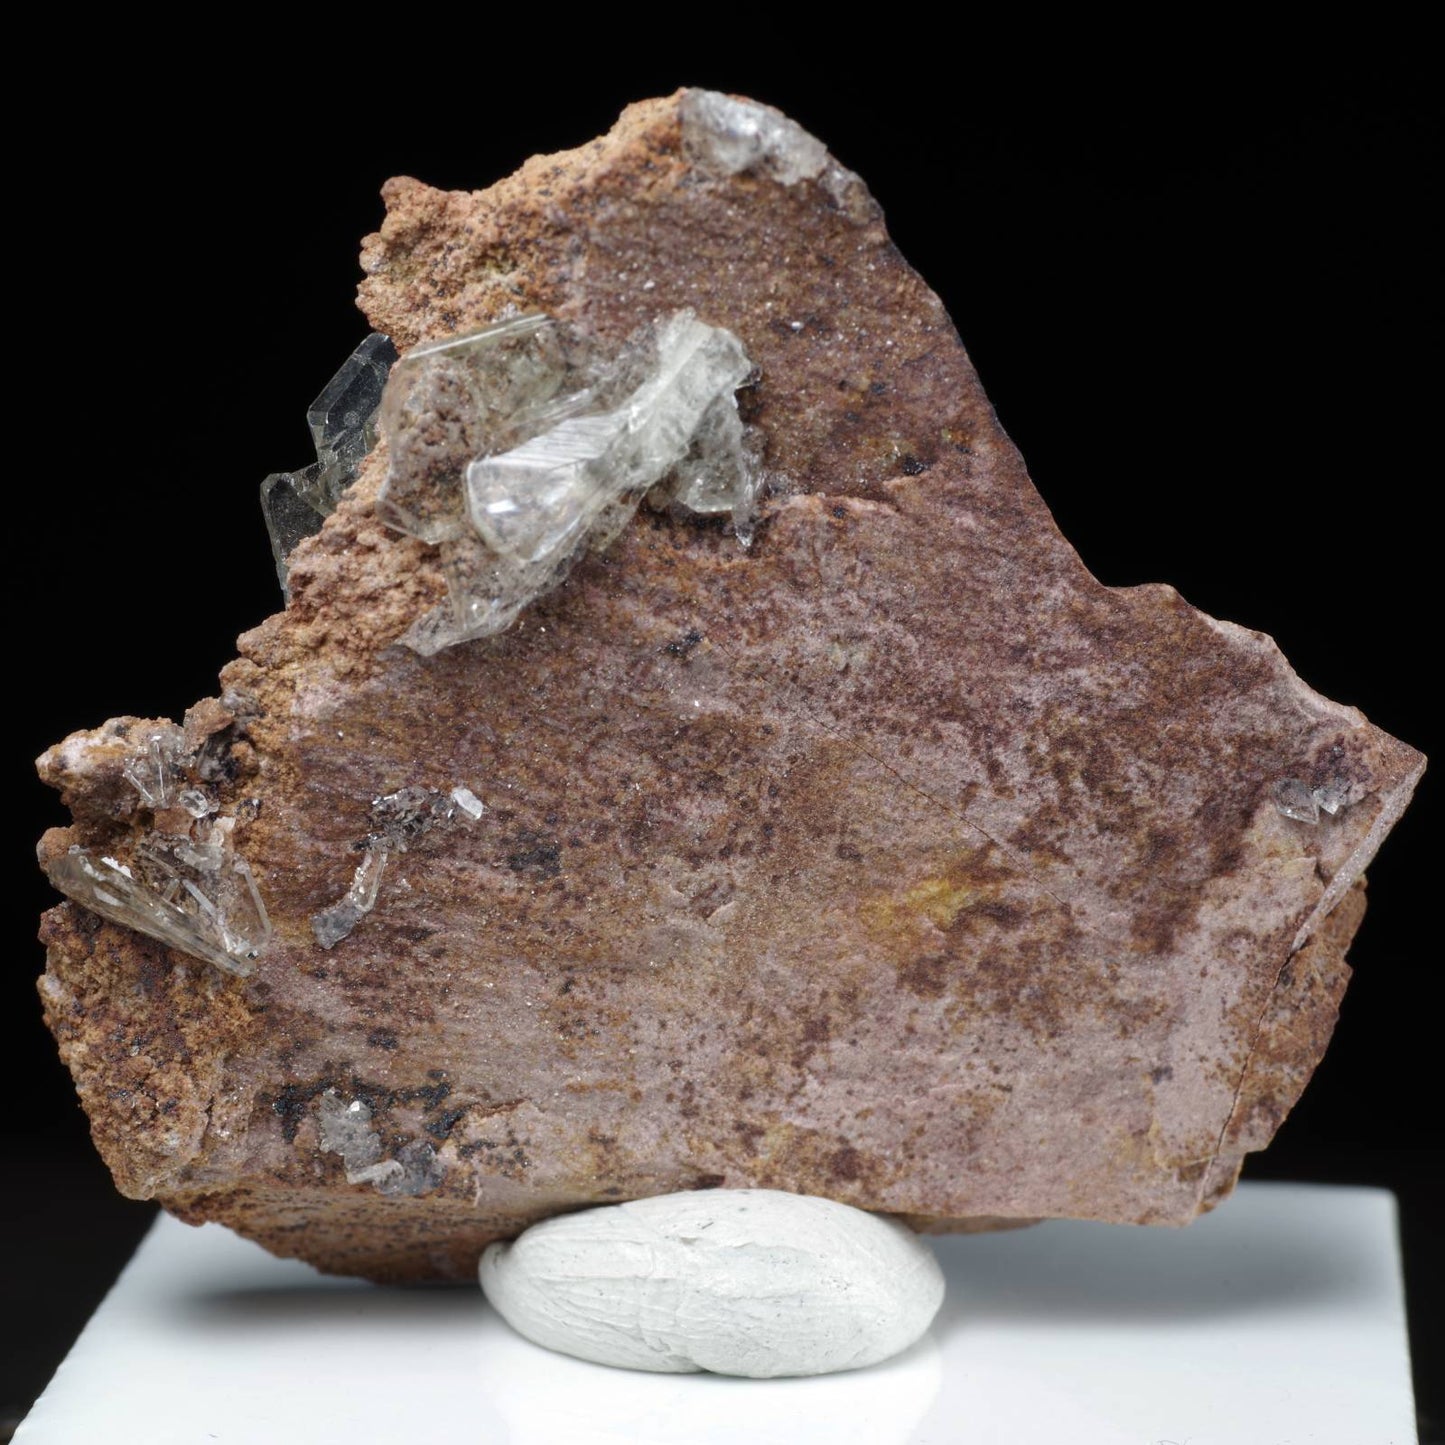 バライト 重晶石 ペルー産 BARYTE Peru 原石 写真現物 動画あり